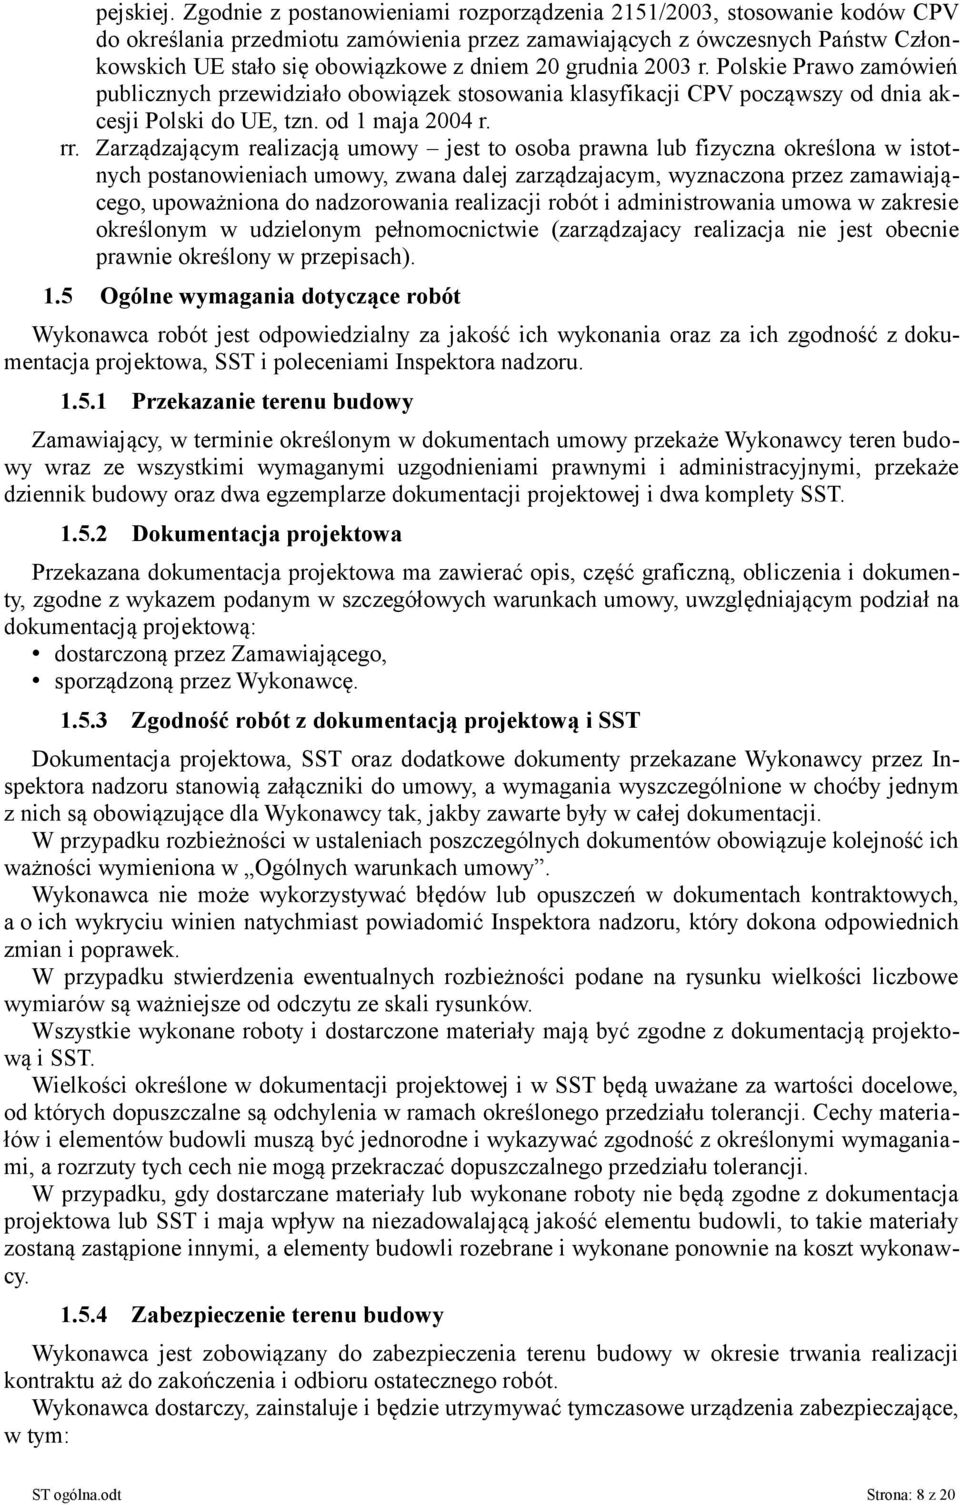 grudnia 2003 r. Polskie Prawo zamówień publicznych przewidziało obowiązek stosowania klasyfikacji CPV począwszy od dnia akcesji Polski do UE, tzn. od 1 maja 2004 r. rr.